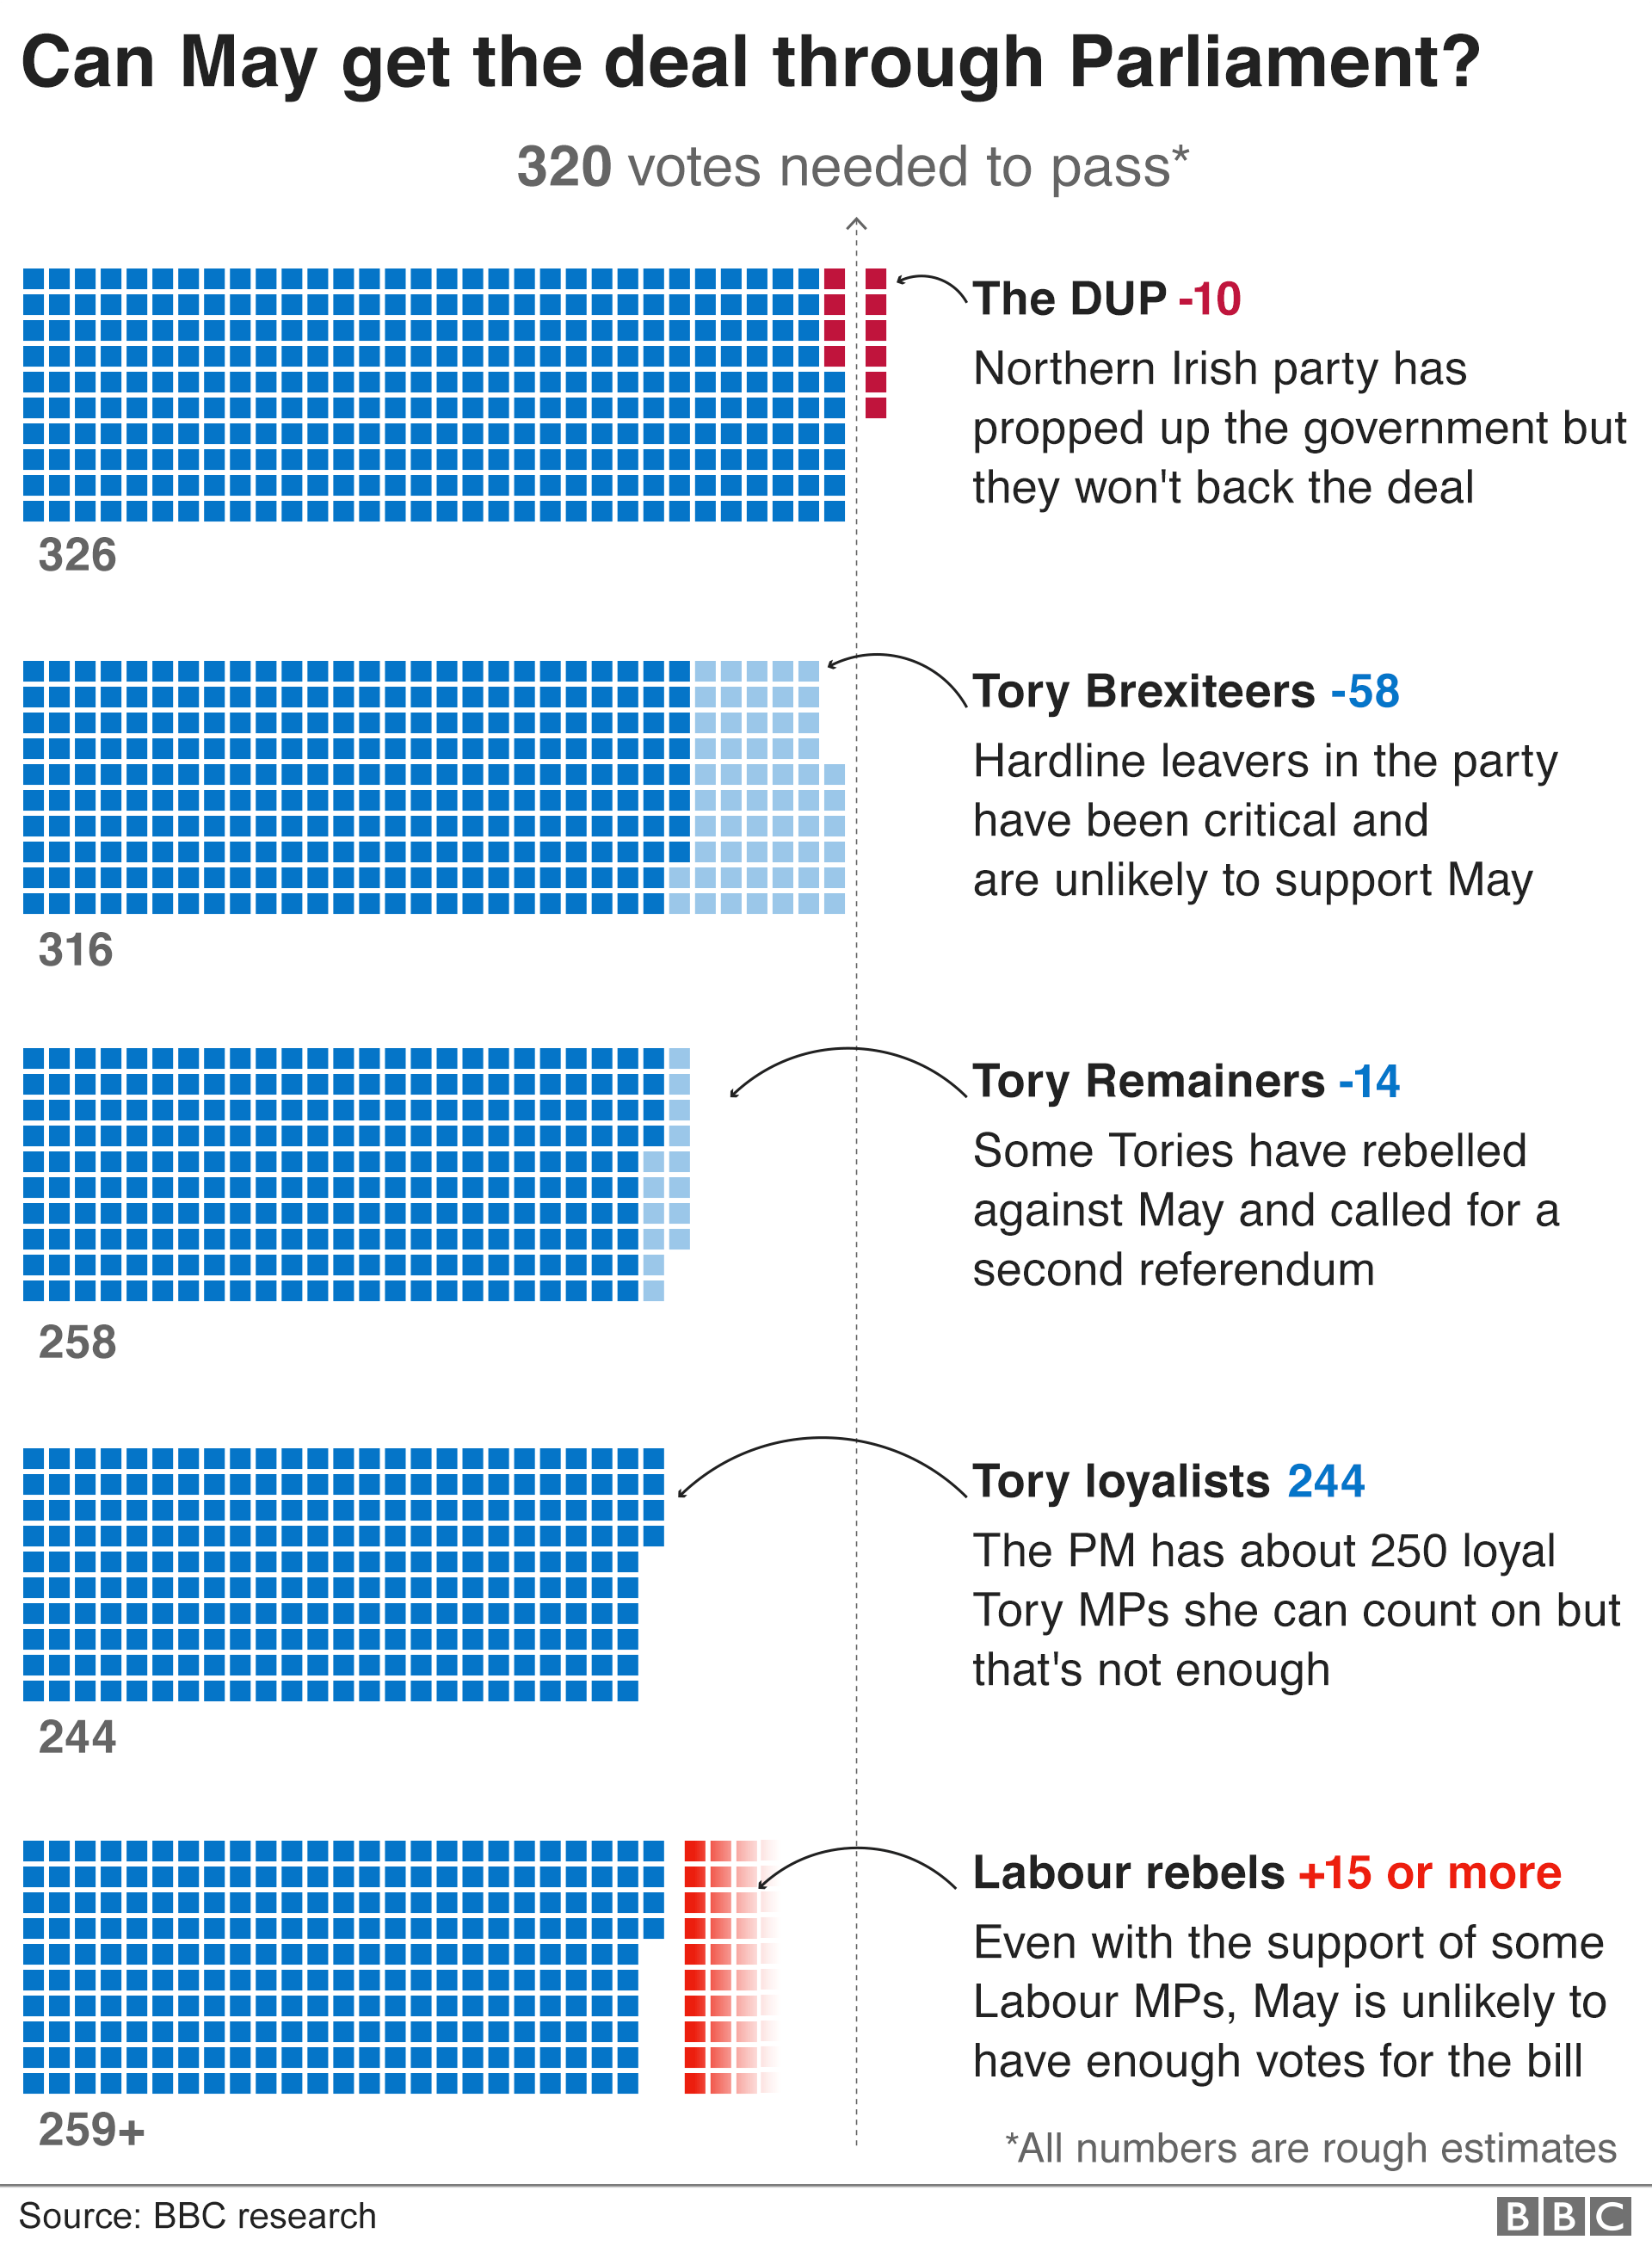 Инфографика, показывающая, как различные парламентские группы могут голосовать по сделке Brexit